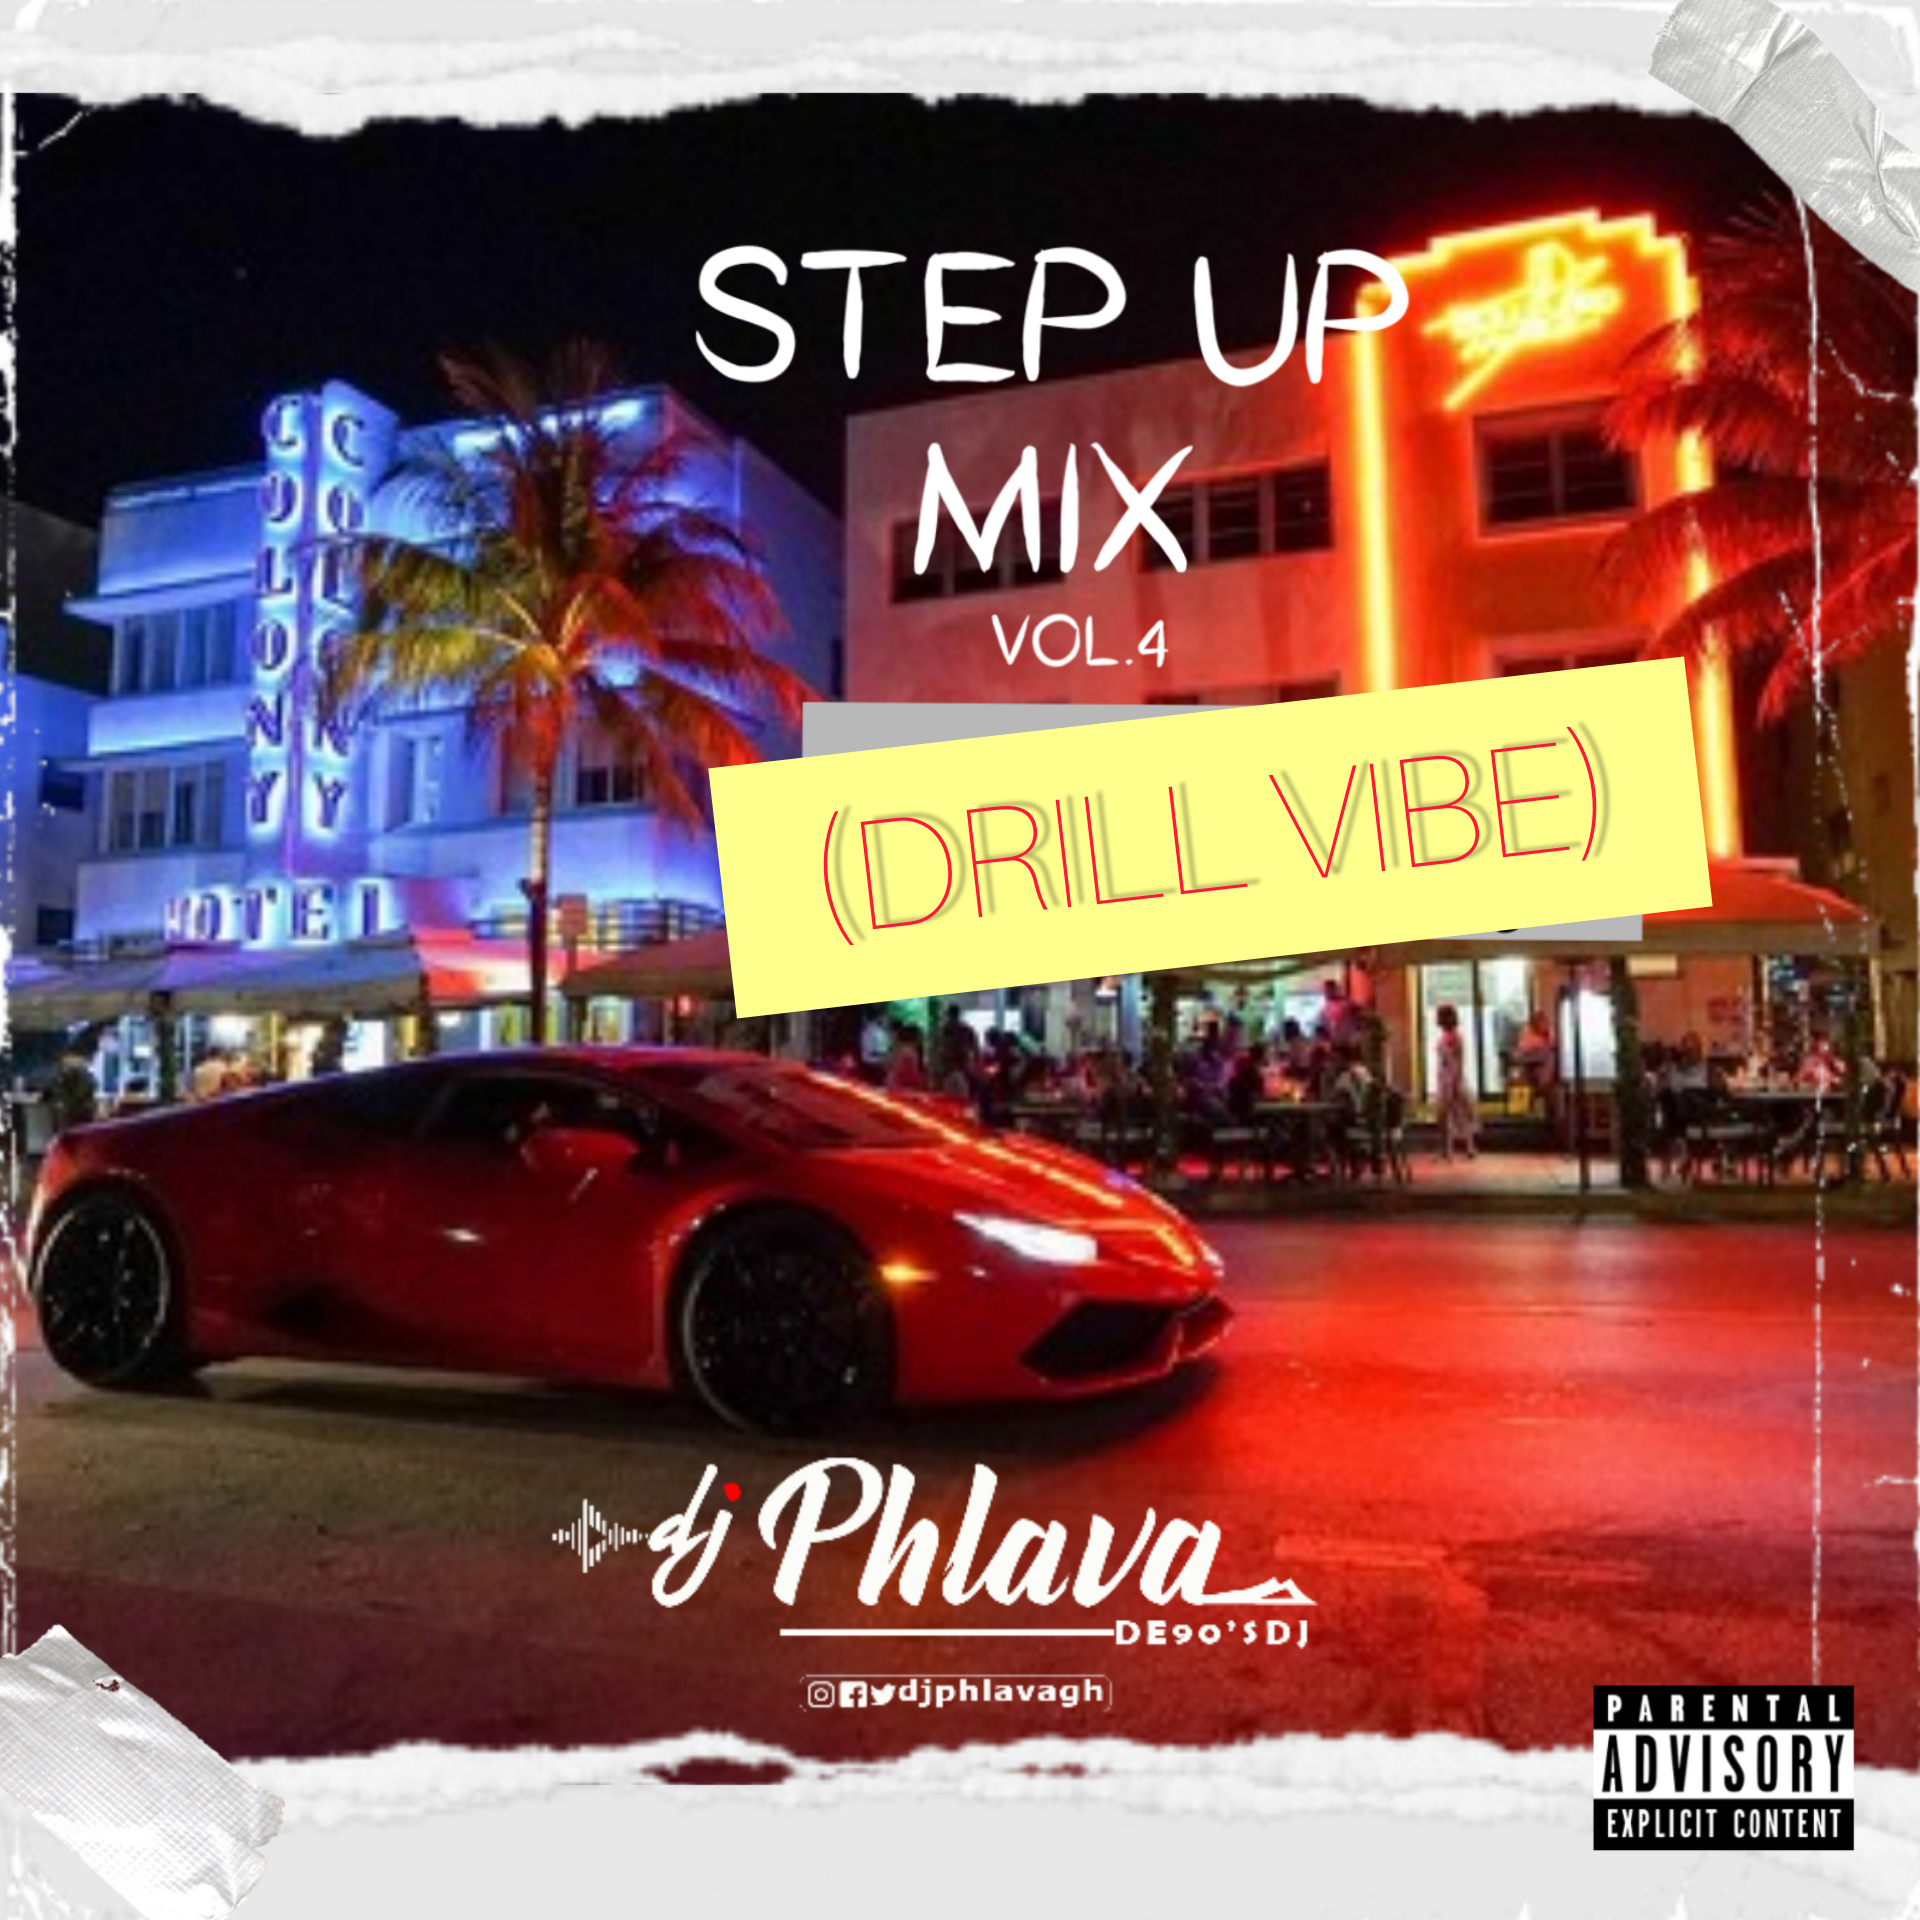 Dj Phlava De90sdj StepUp Mix4